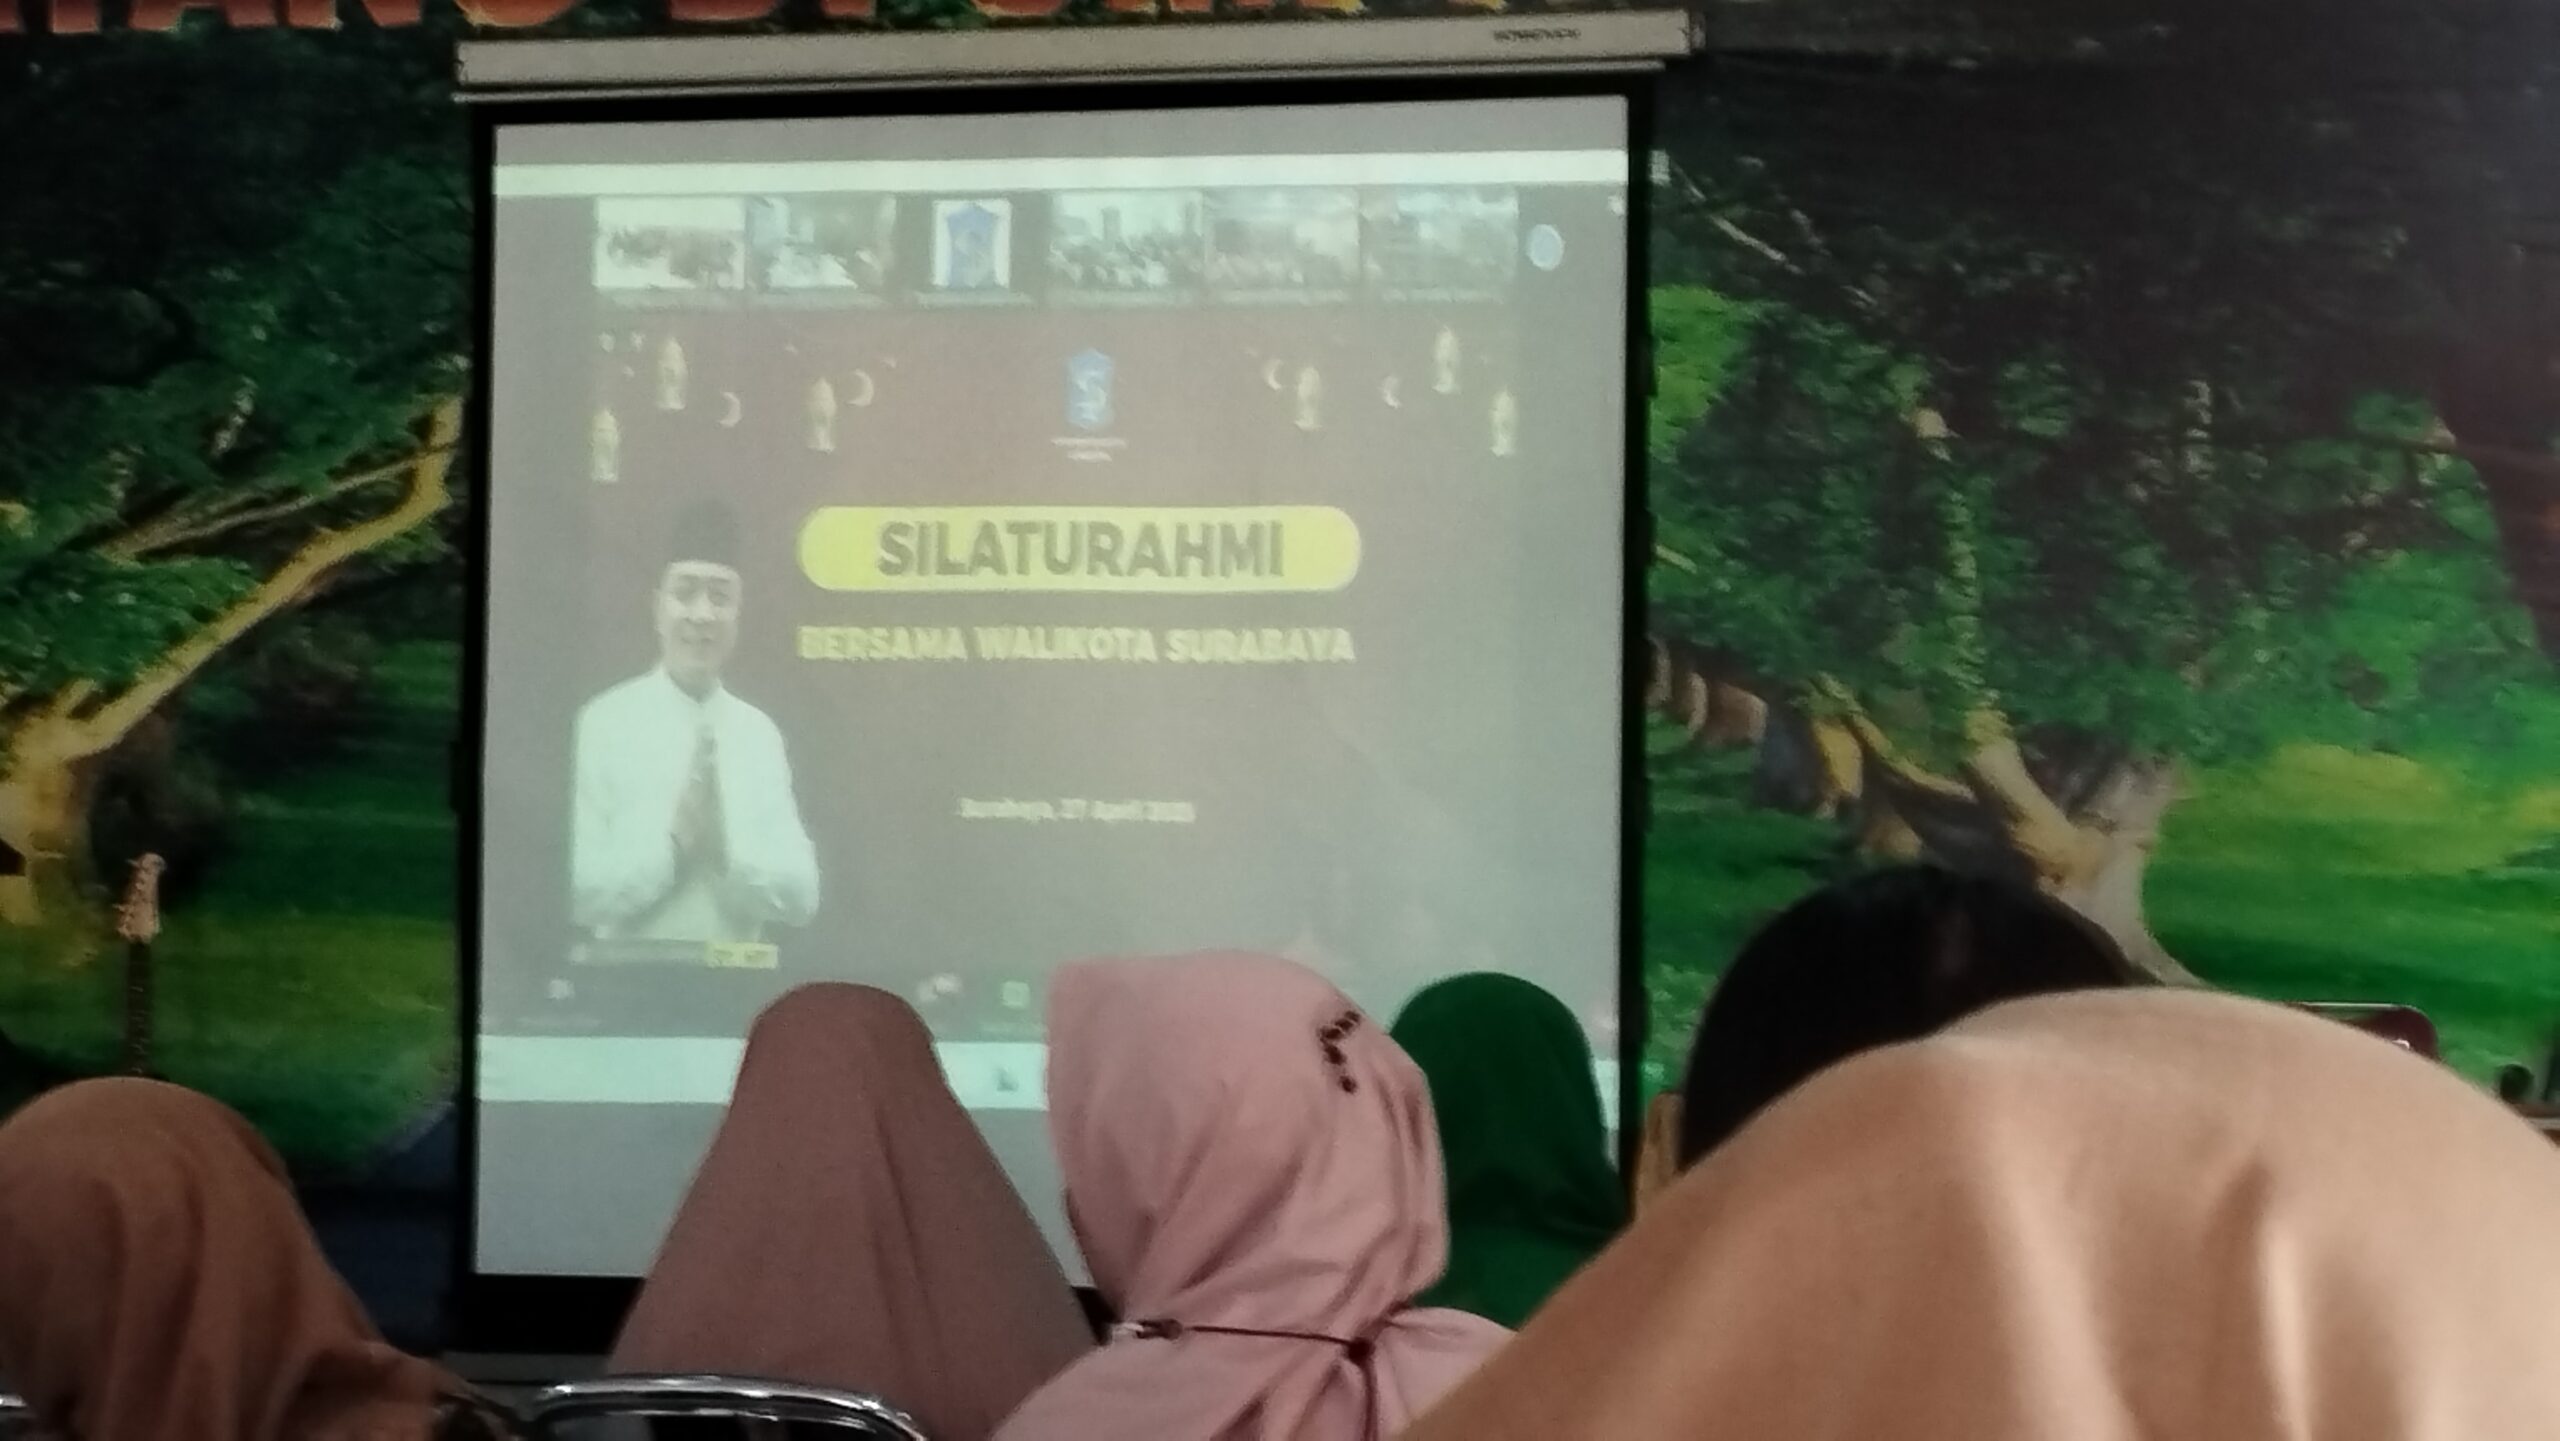 Silahturahmi Bersama Walikota Surabaya secara daring